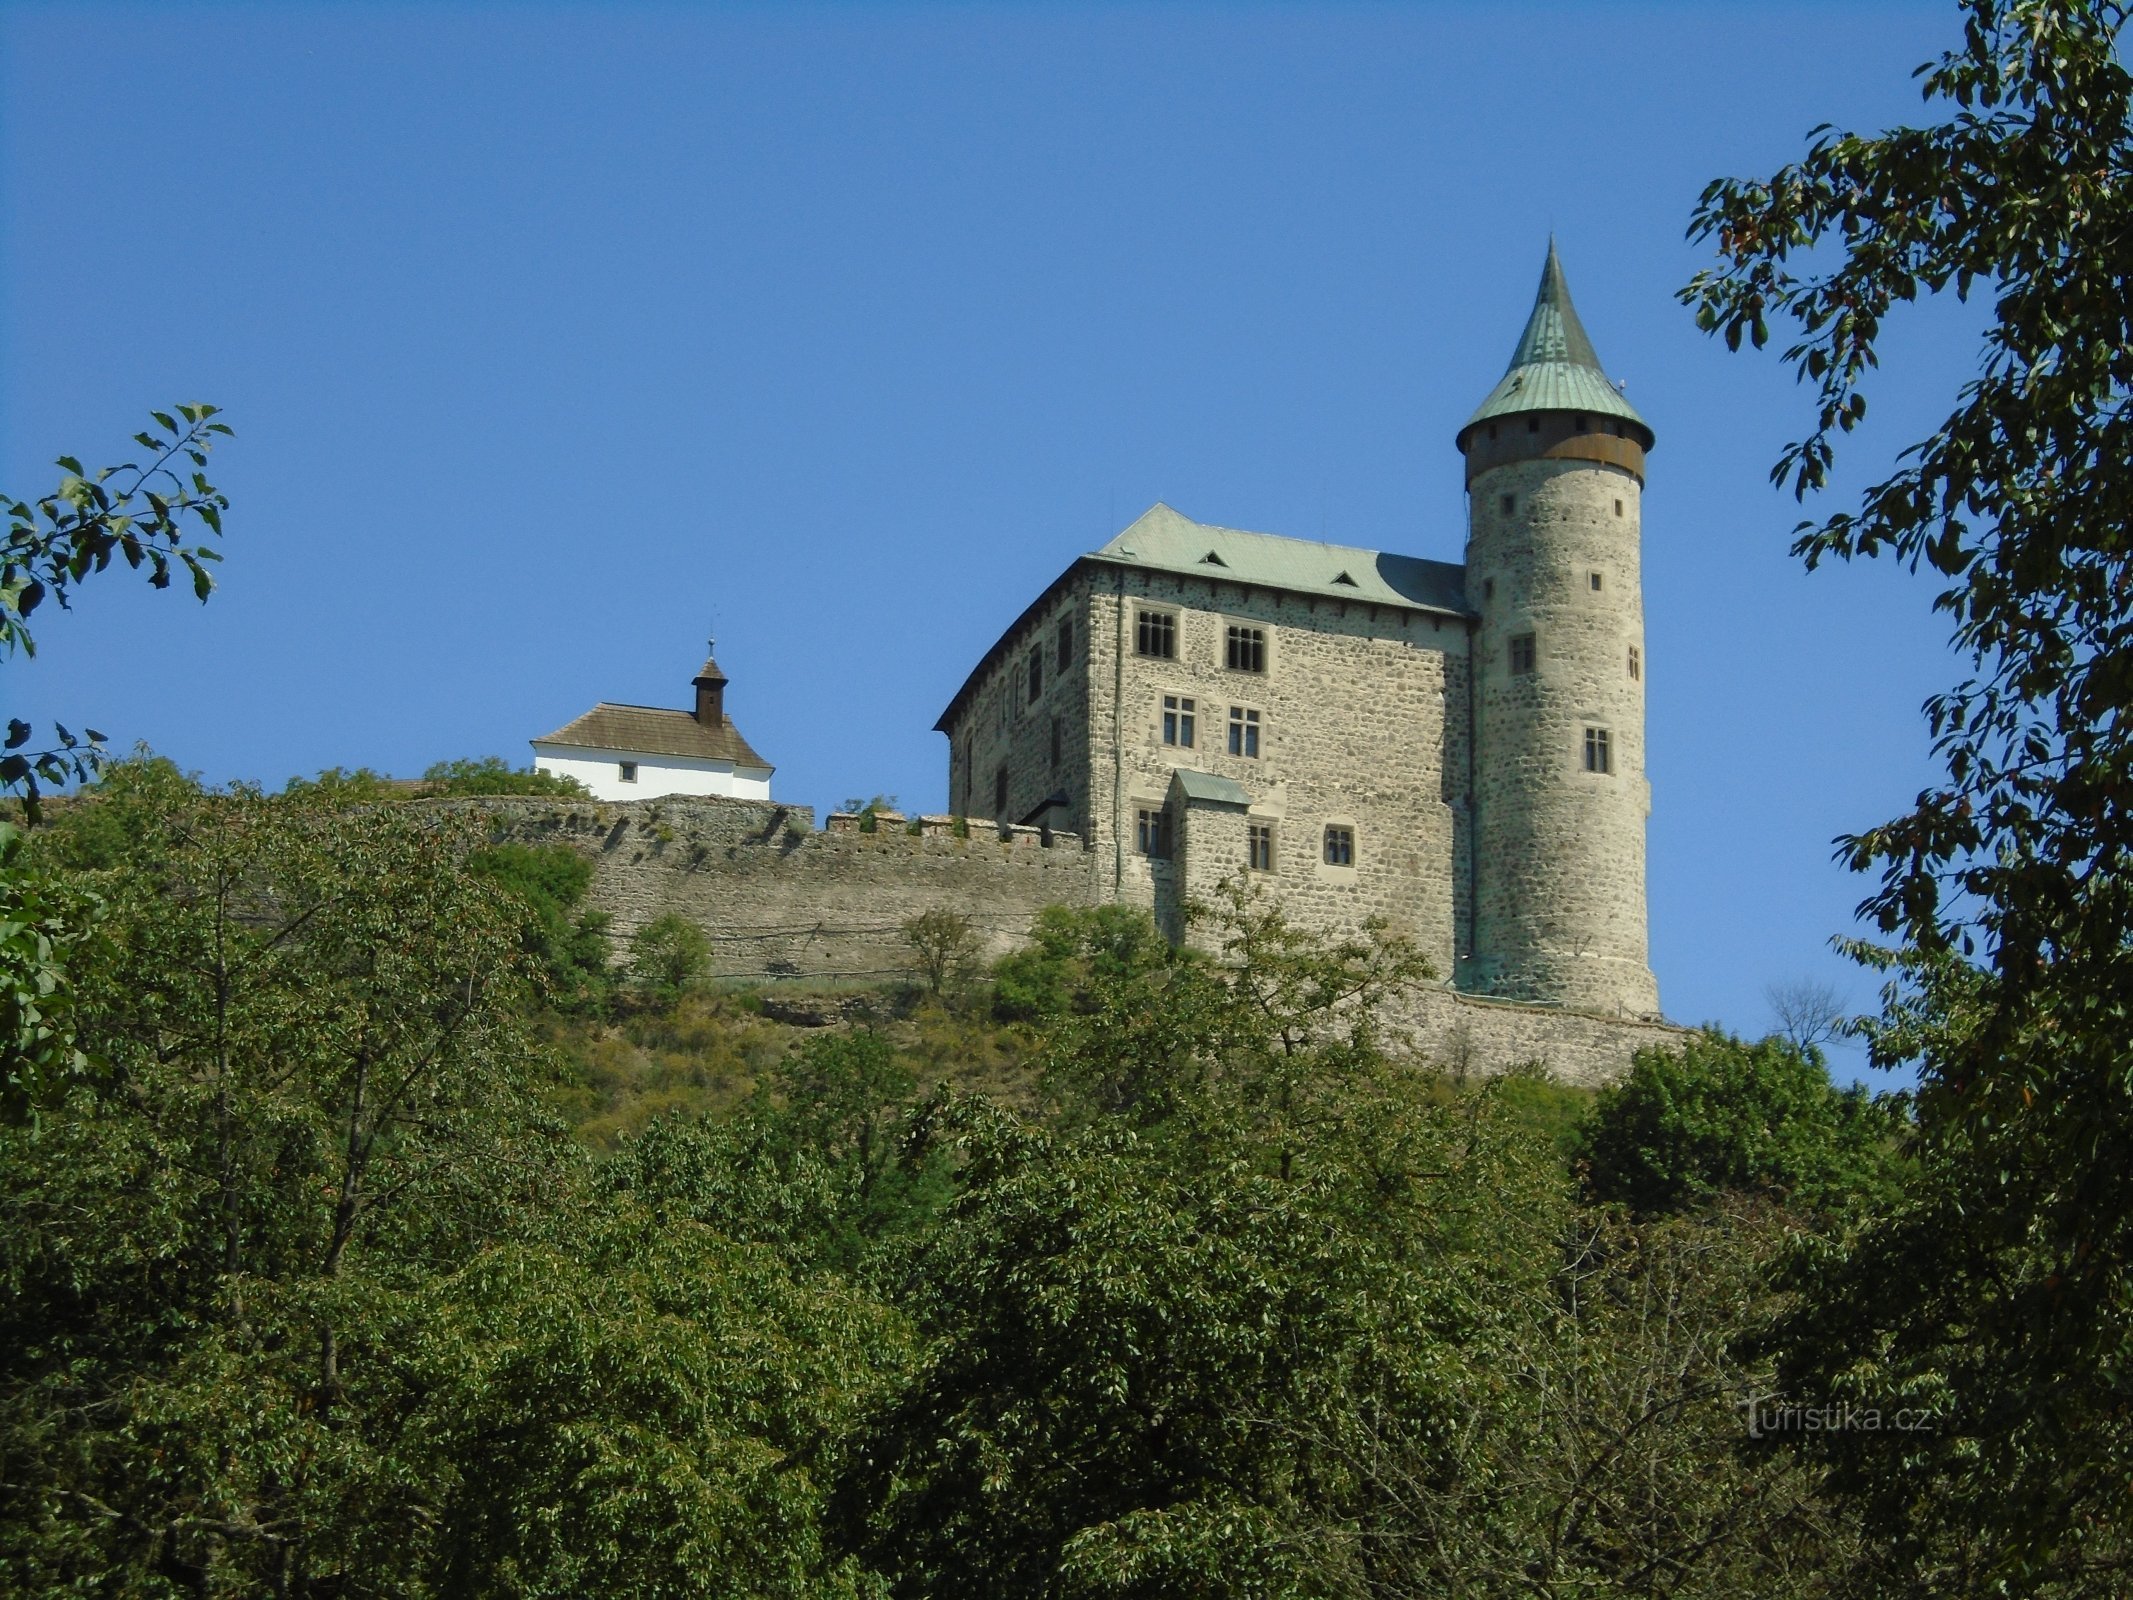 Lâu đài Kunětická hora (vật thể nhỏ màu trắng là nhà nguyện của Thánh Catherine of Alexandria, Ráby)